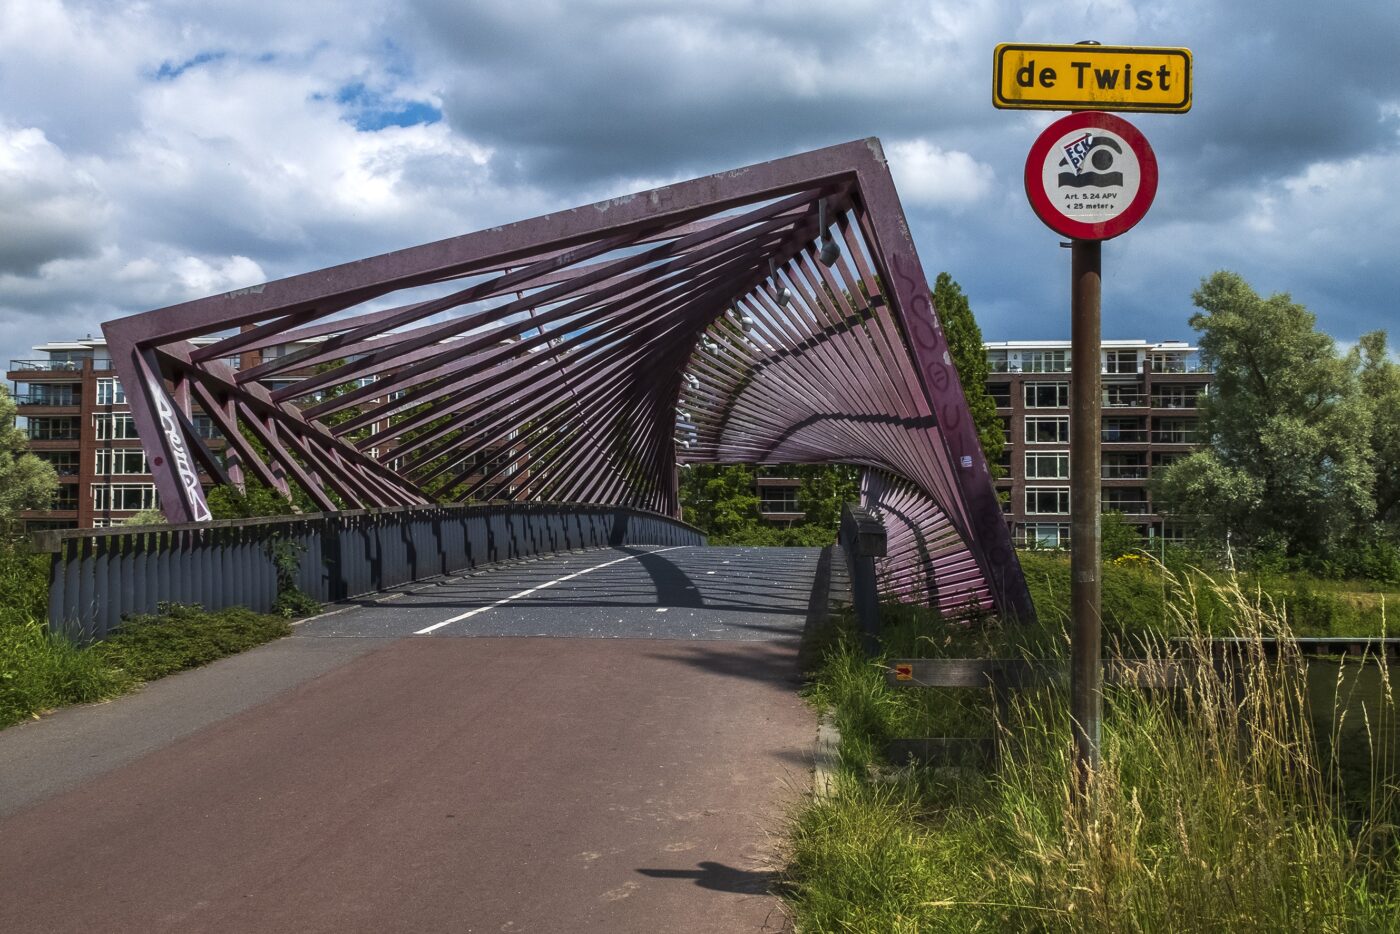 Fiets- en voetgangersbrug De Twist in Vlaardingen: de eerste indruk valt nog mee.